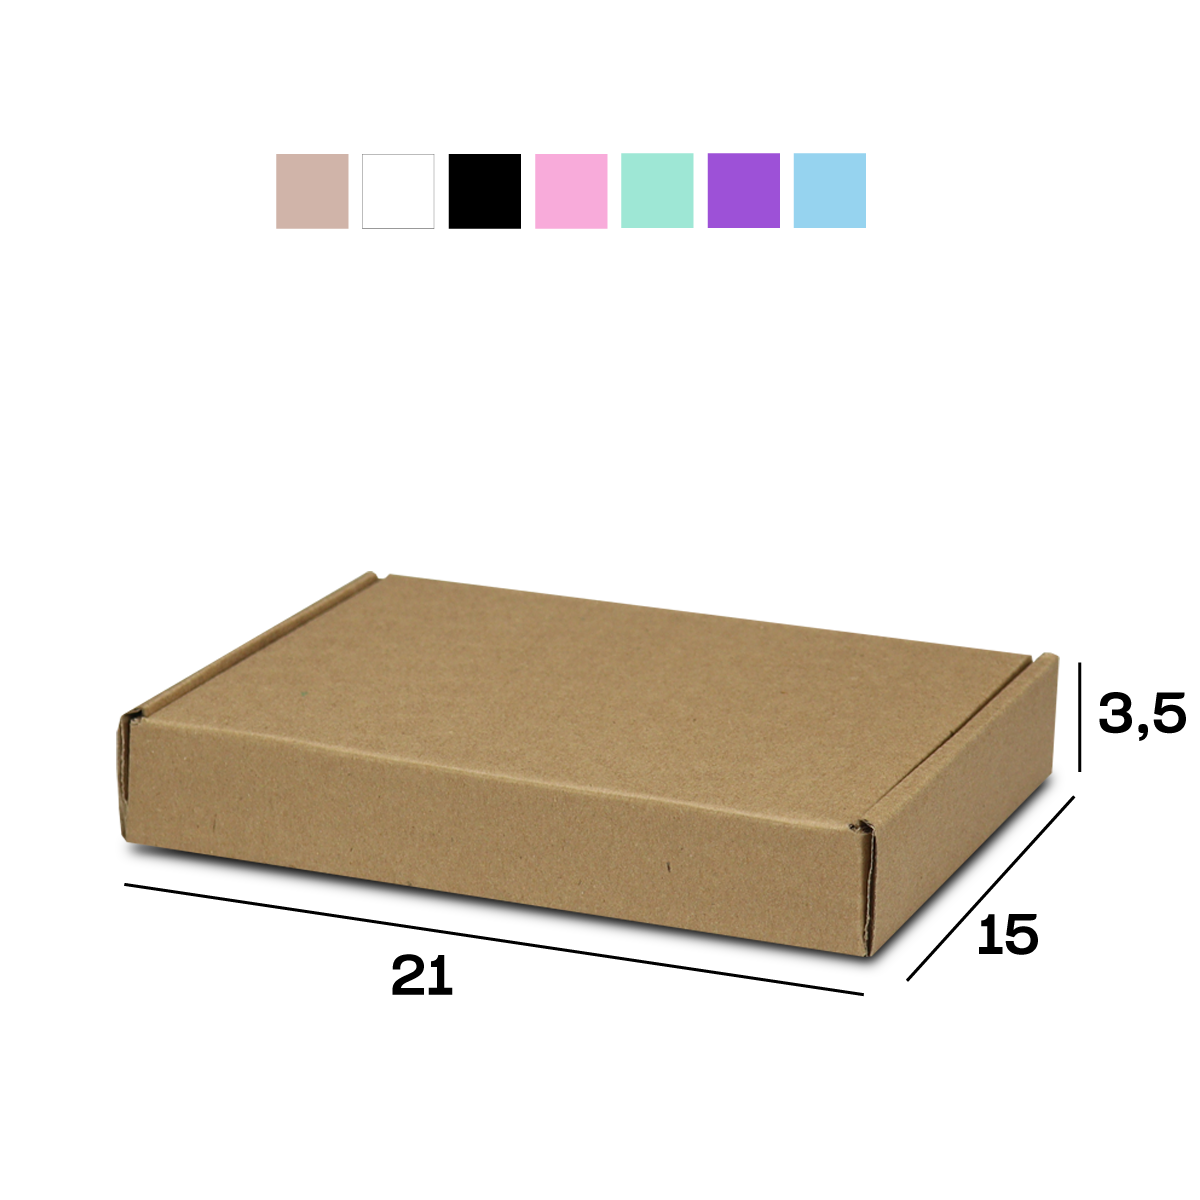 Caixa de Papelão Sedex 15 Pac Mini Envios (21x15x3,5) Lisa